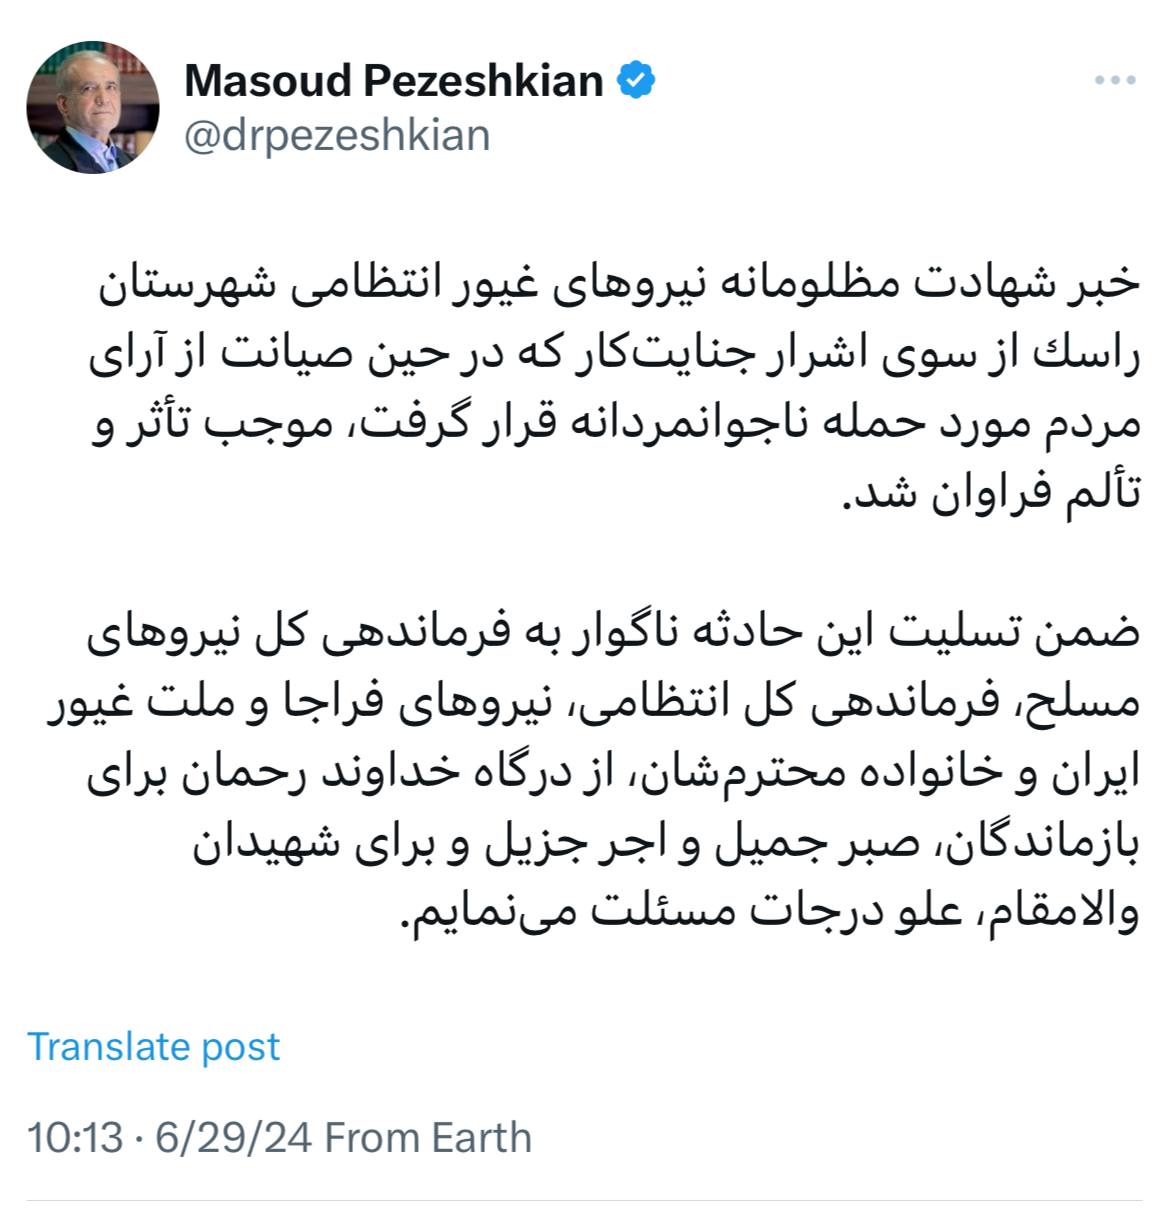 اولین توئیت مسعود پزشکیان بعد از آغاز شمارش آراء انتخابات ریاست جمهوری / تسلیت بخاطر یک حادثه تلخ 2